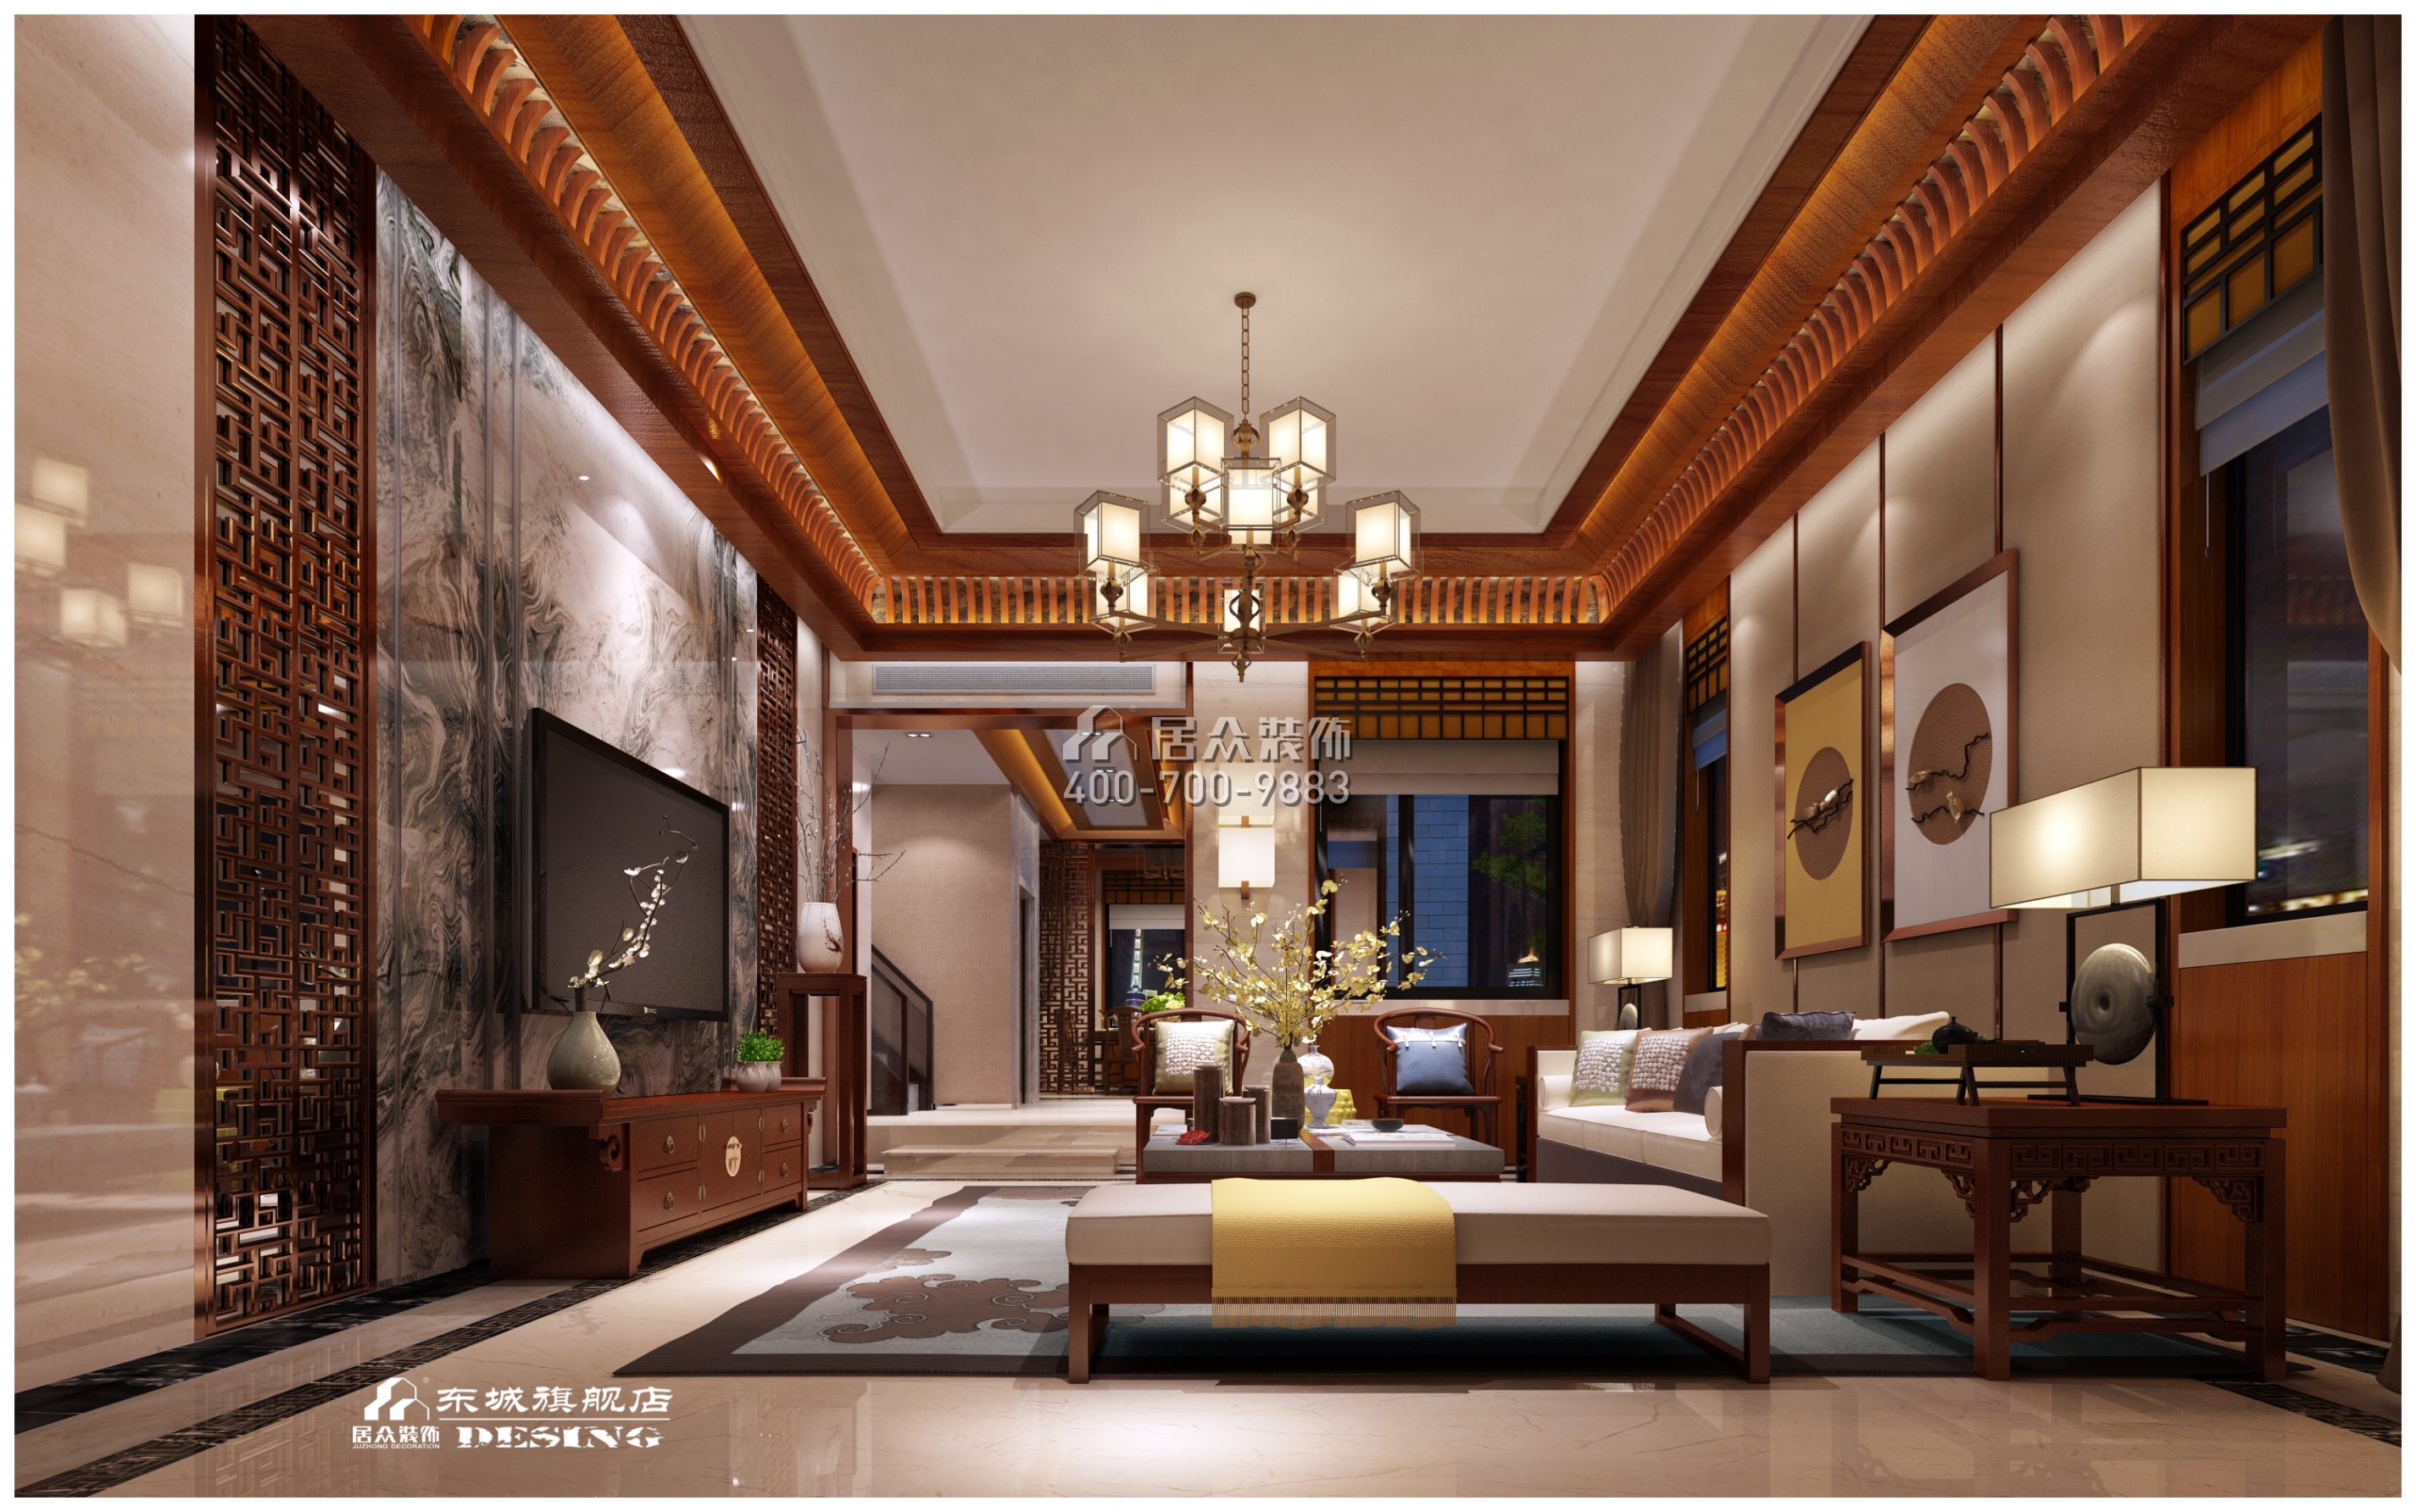 藏珑湖上国际600平方米中式风格别墅户型客厅装修效果图